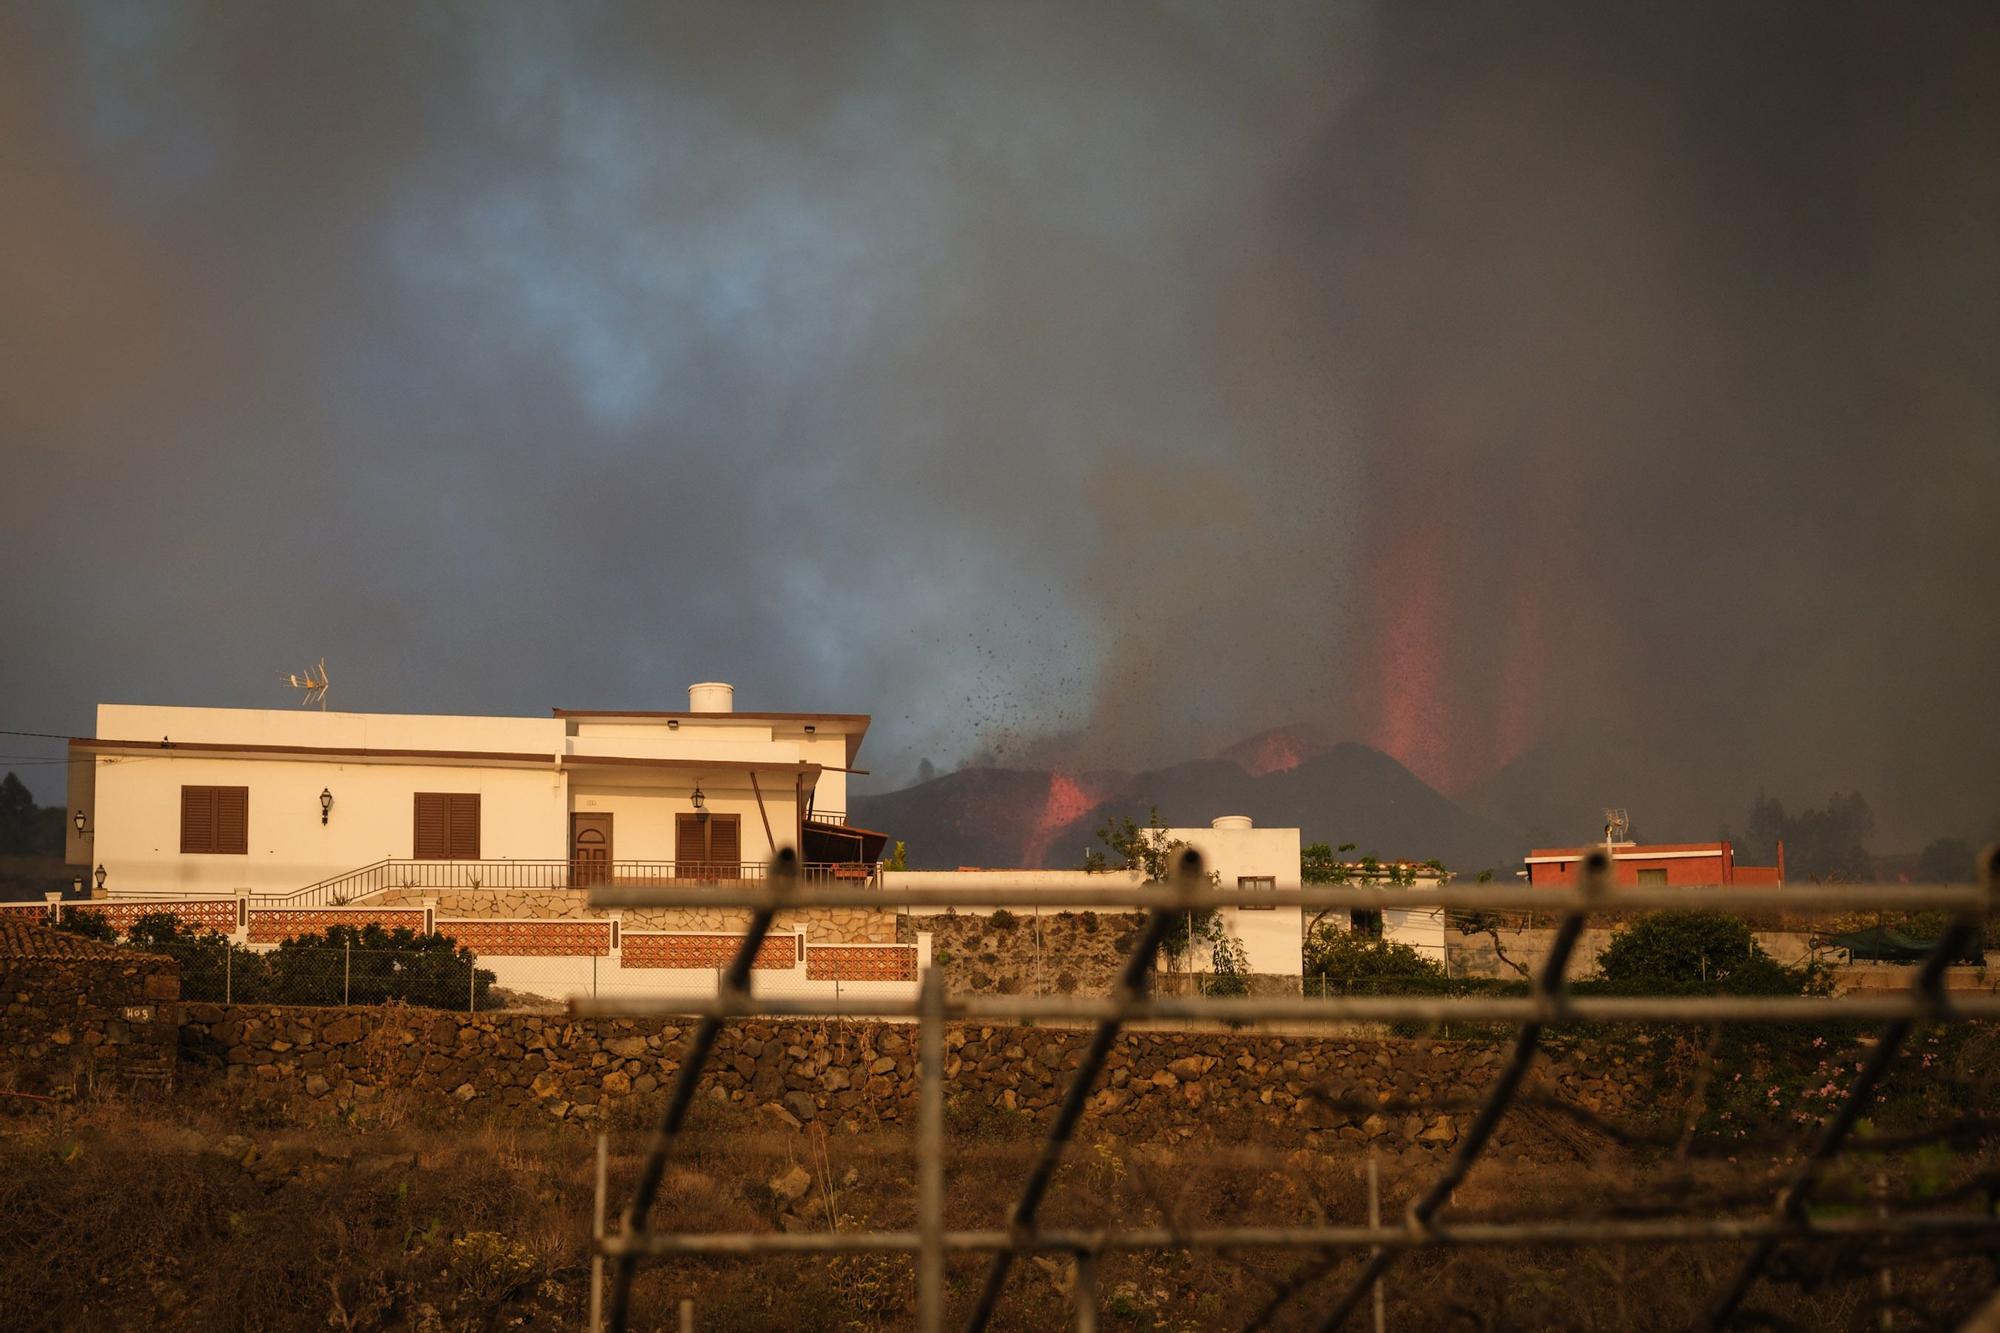 Erupción en La Palma